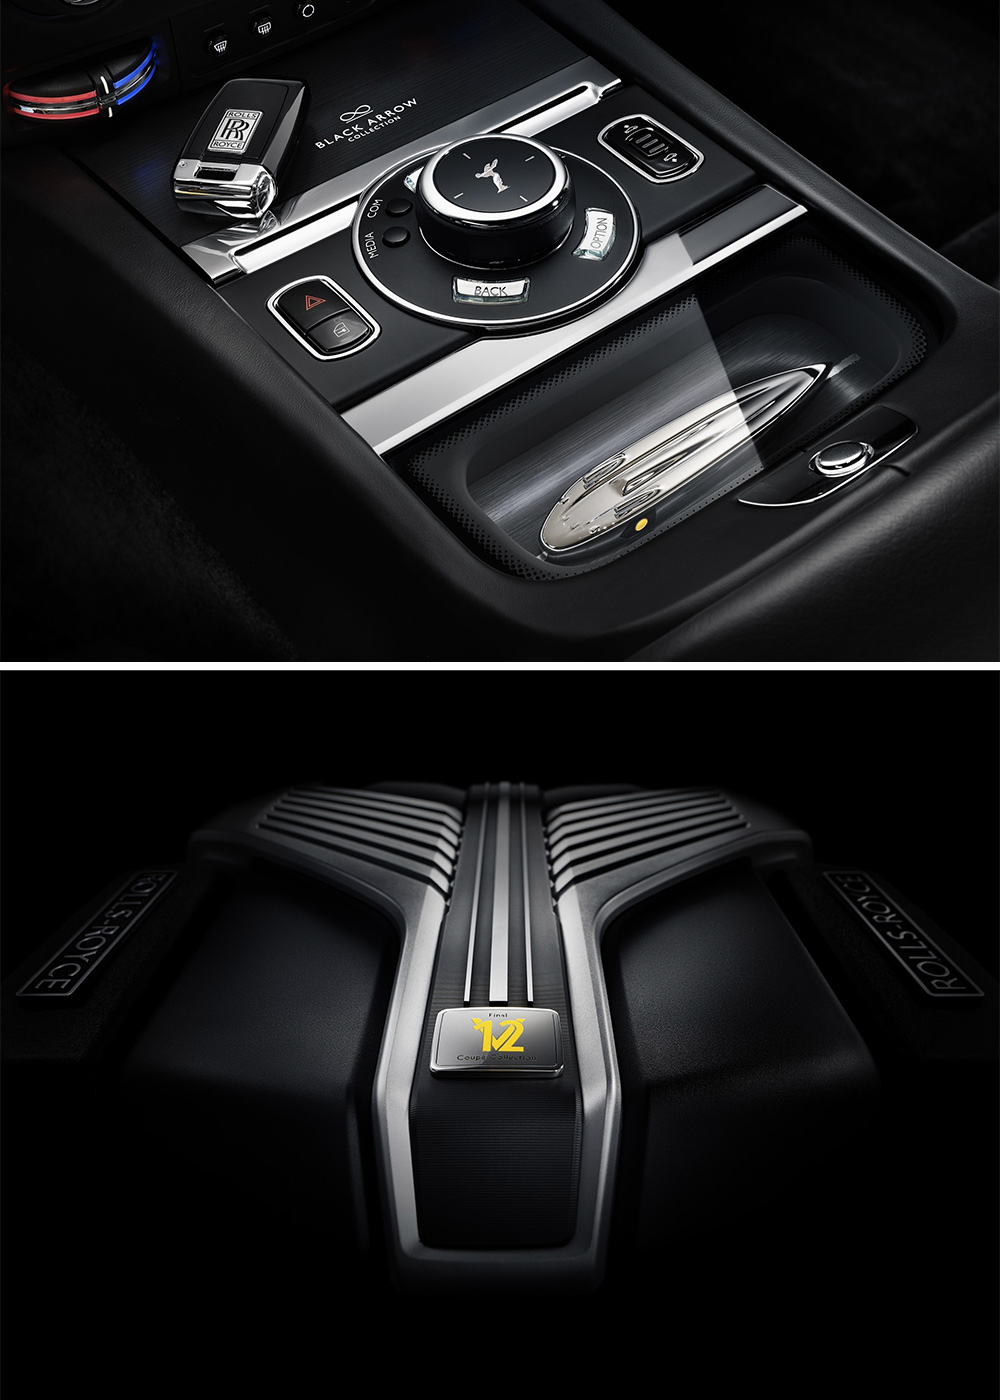 The Black Badge Wraith Black Arrow Is Rolls-Royce's Last V-12